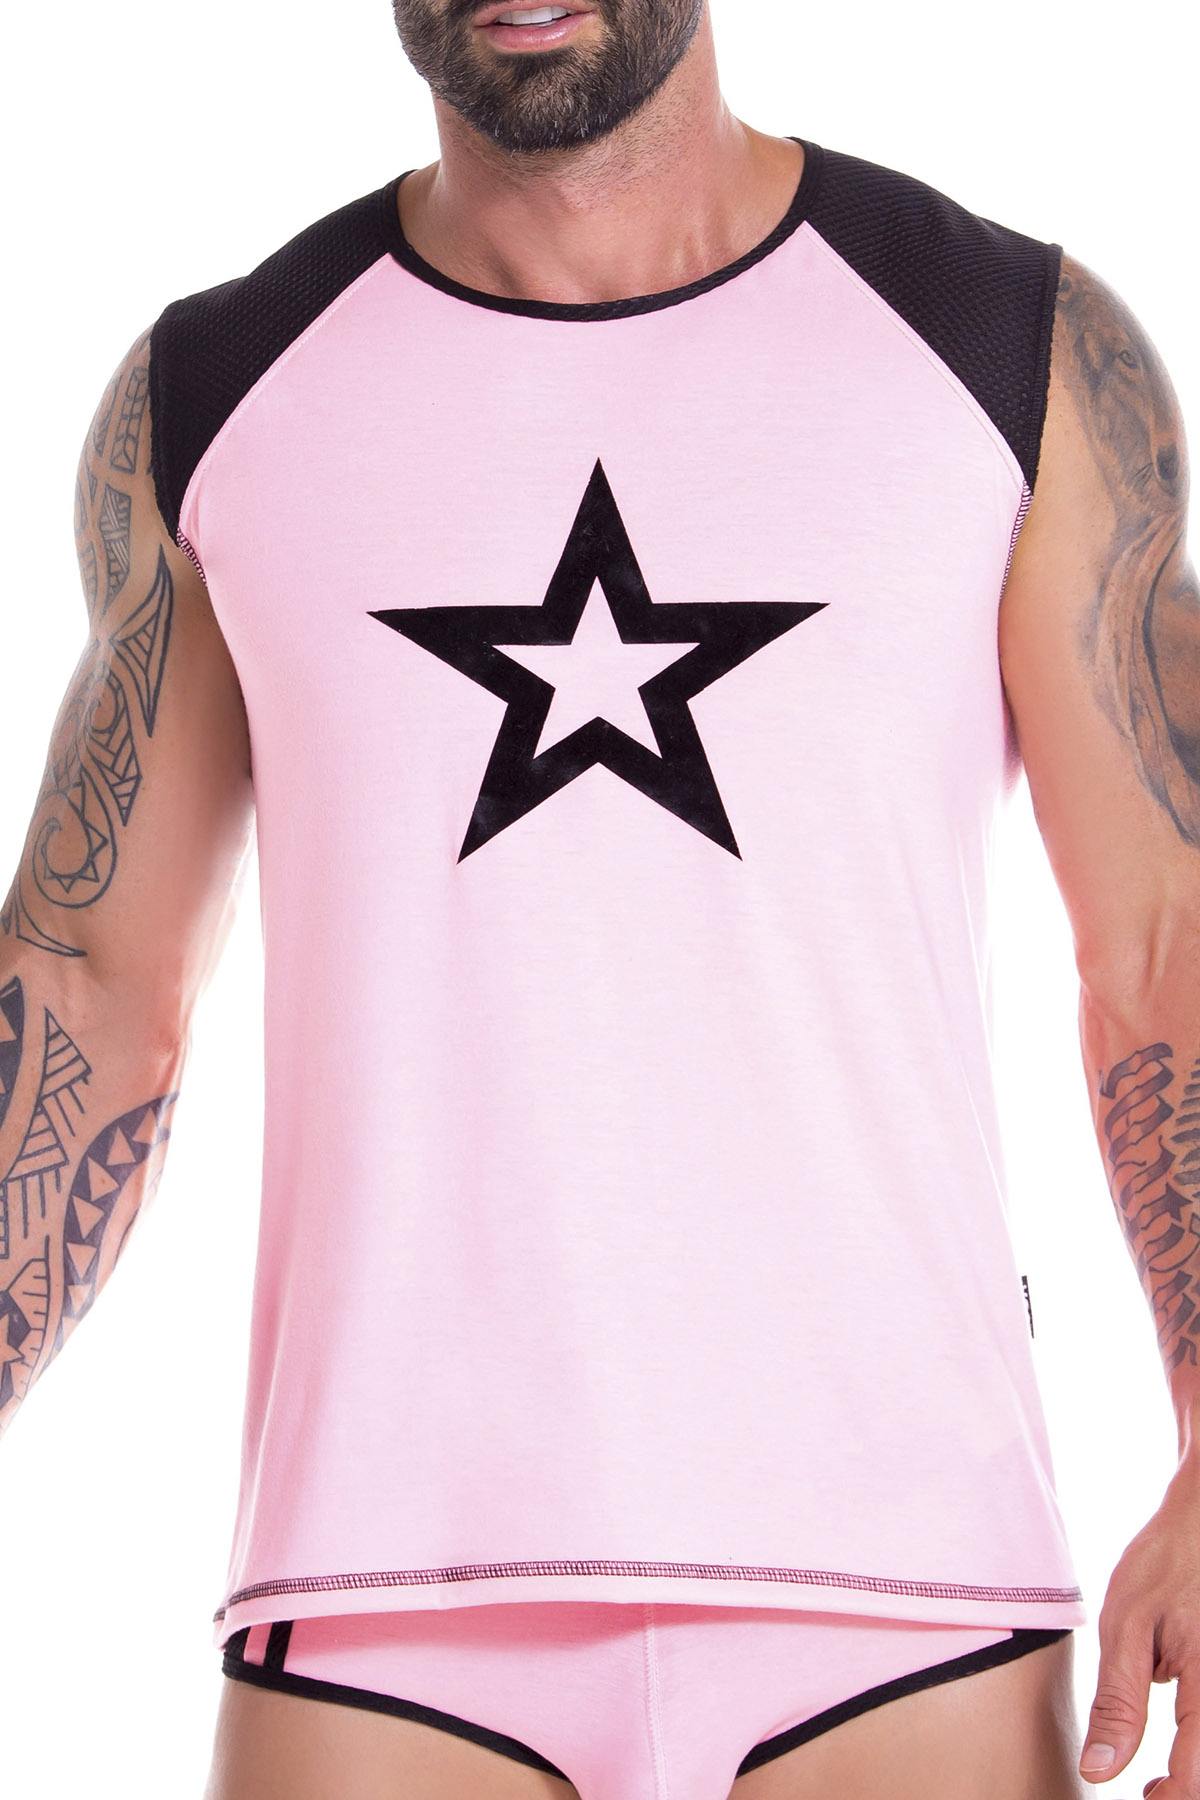 JOR 0857 Pink Astro Tank Top